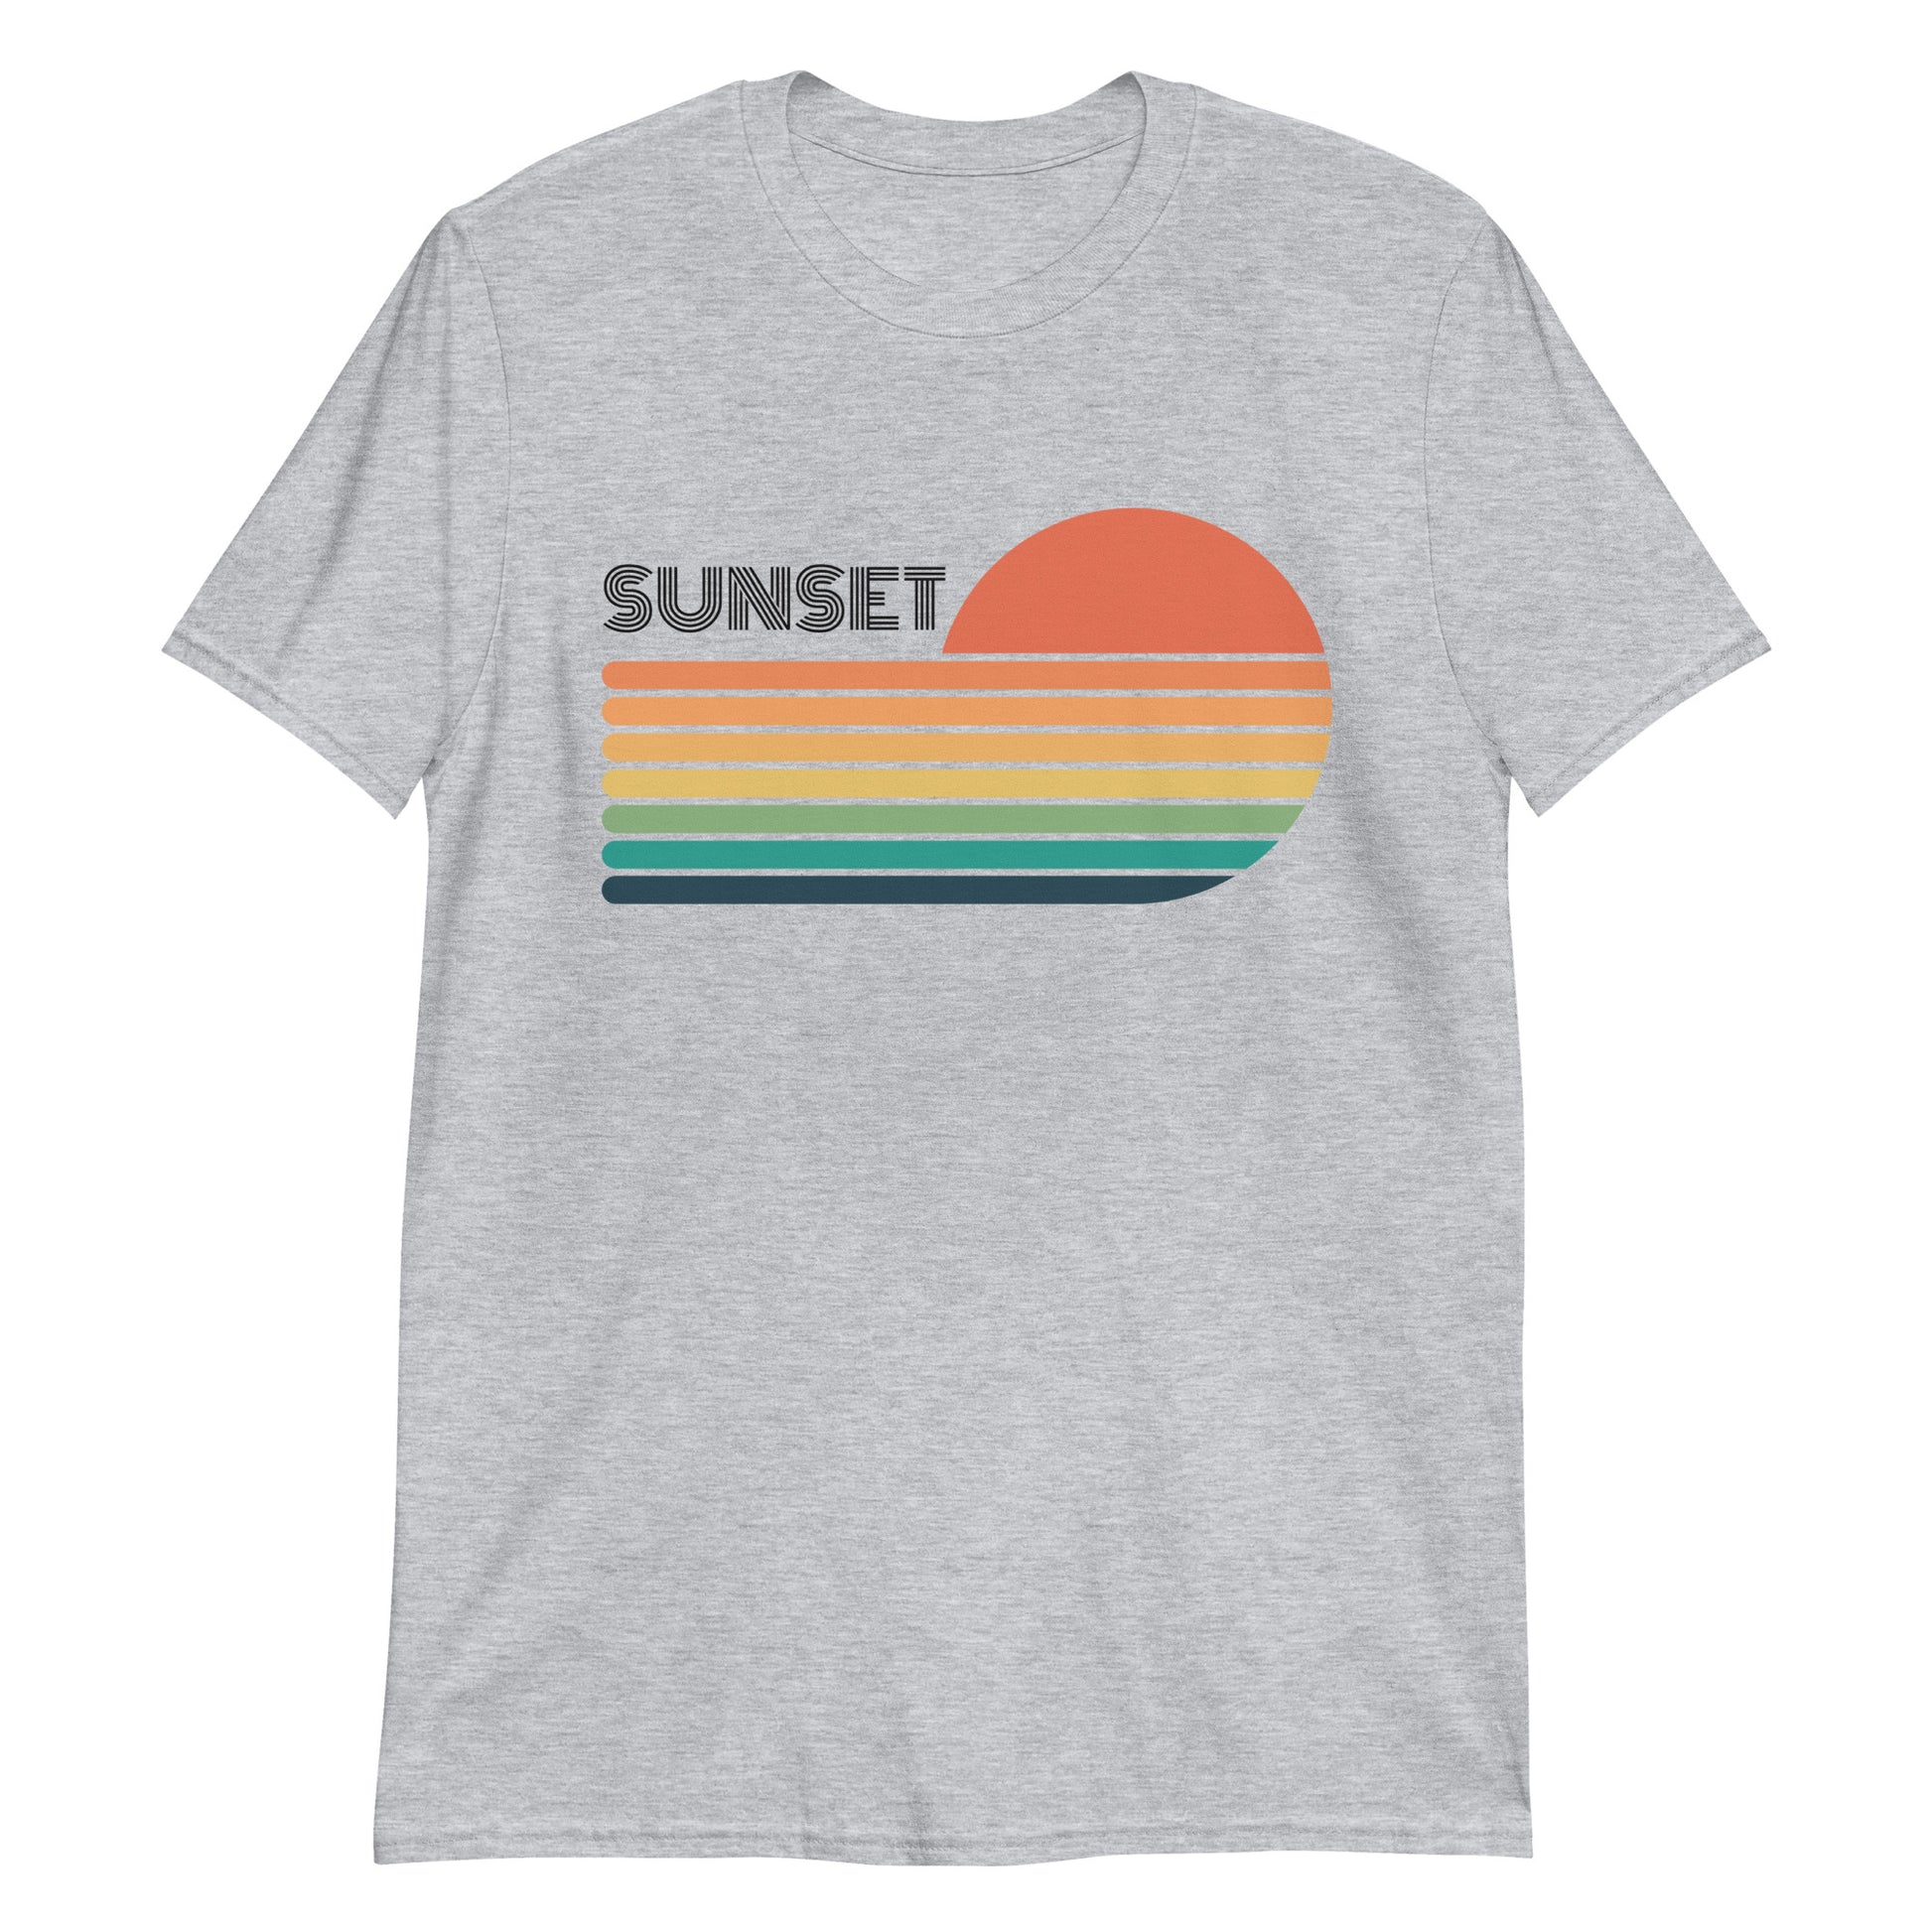 Sunset - Short-Sleeve Unisex T-Shirt Sport Grey Unisex T-shirt Summer